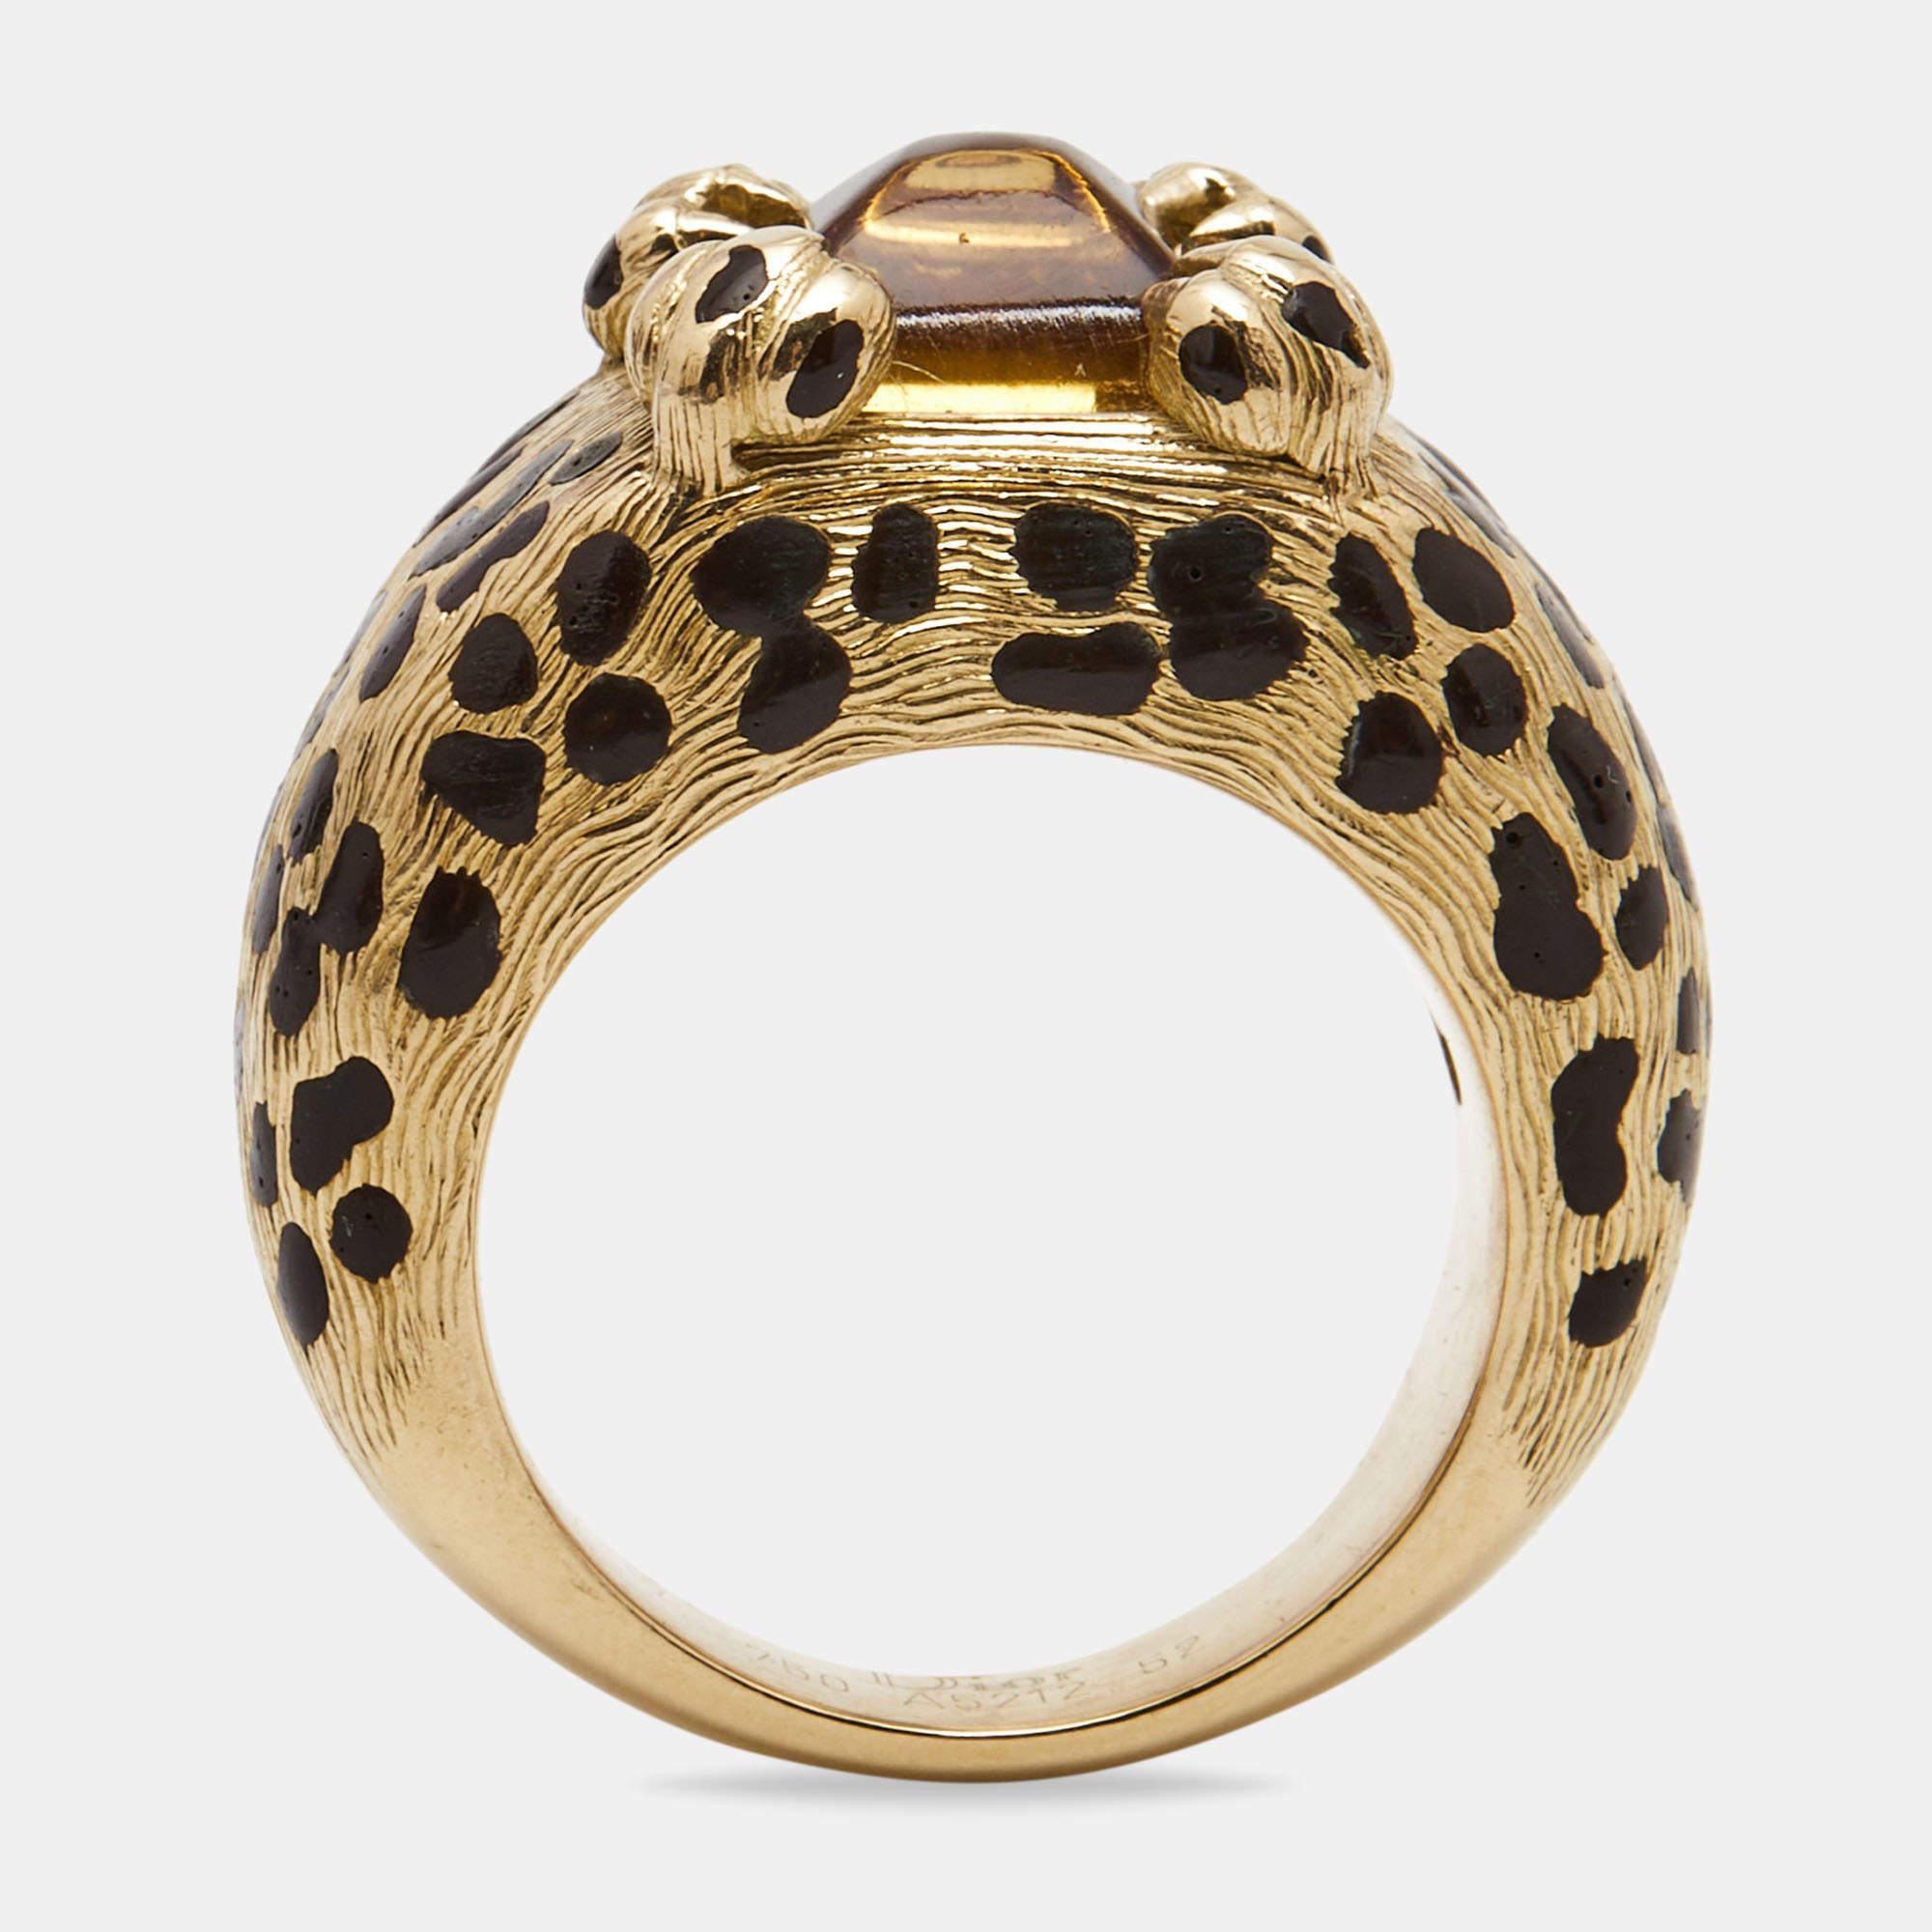 Um Ihre Finger auf die eleganteste Weise zu schmücken, präsentieren wir Ihnen diesen Ring von Dior. Er wurde aus 18-karätigem Gelbgold geschnitzt und mit Leoparden-Details versehen, die Ihren Look im Handumdrehen aufwerten.

